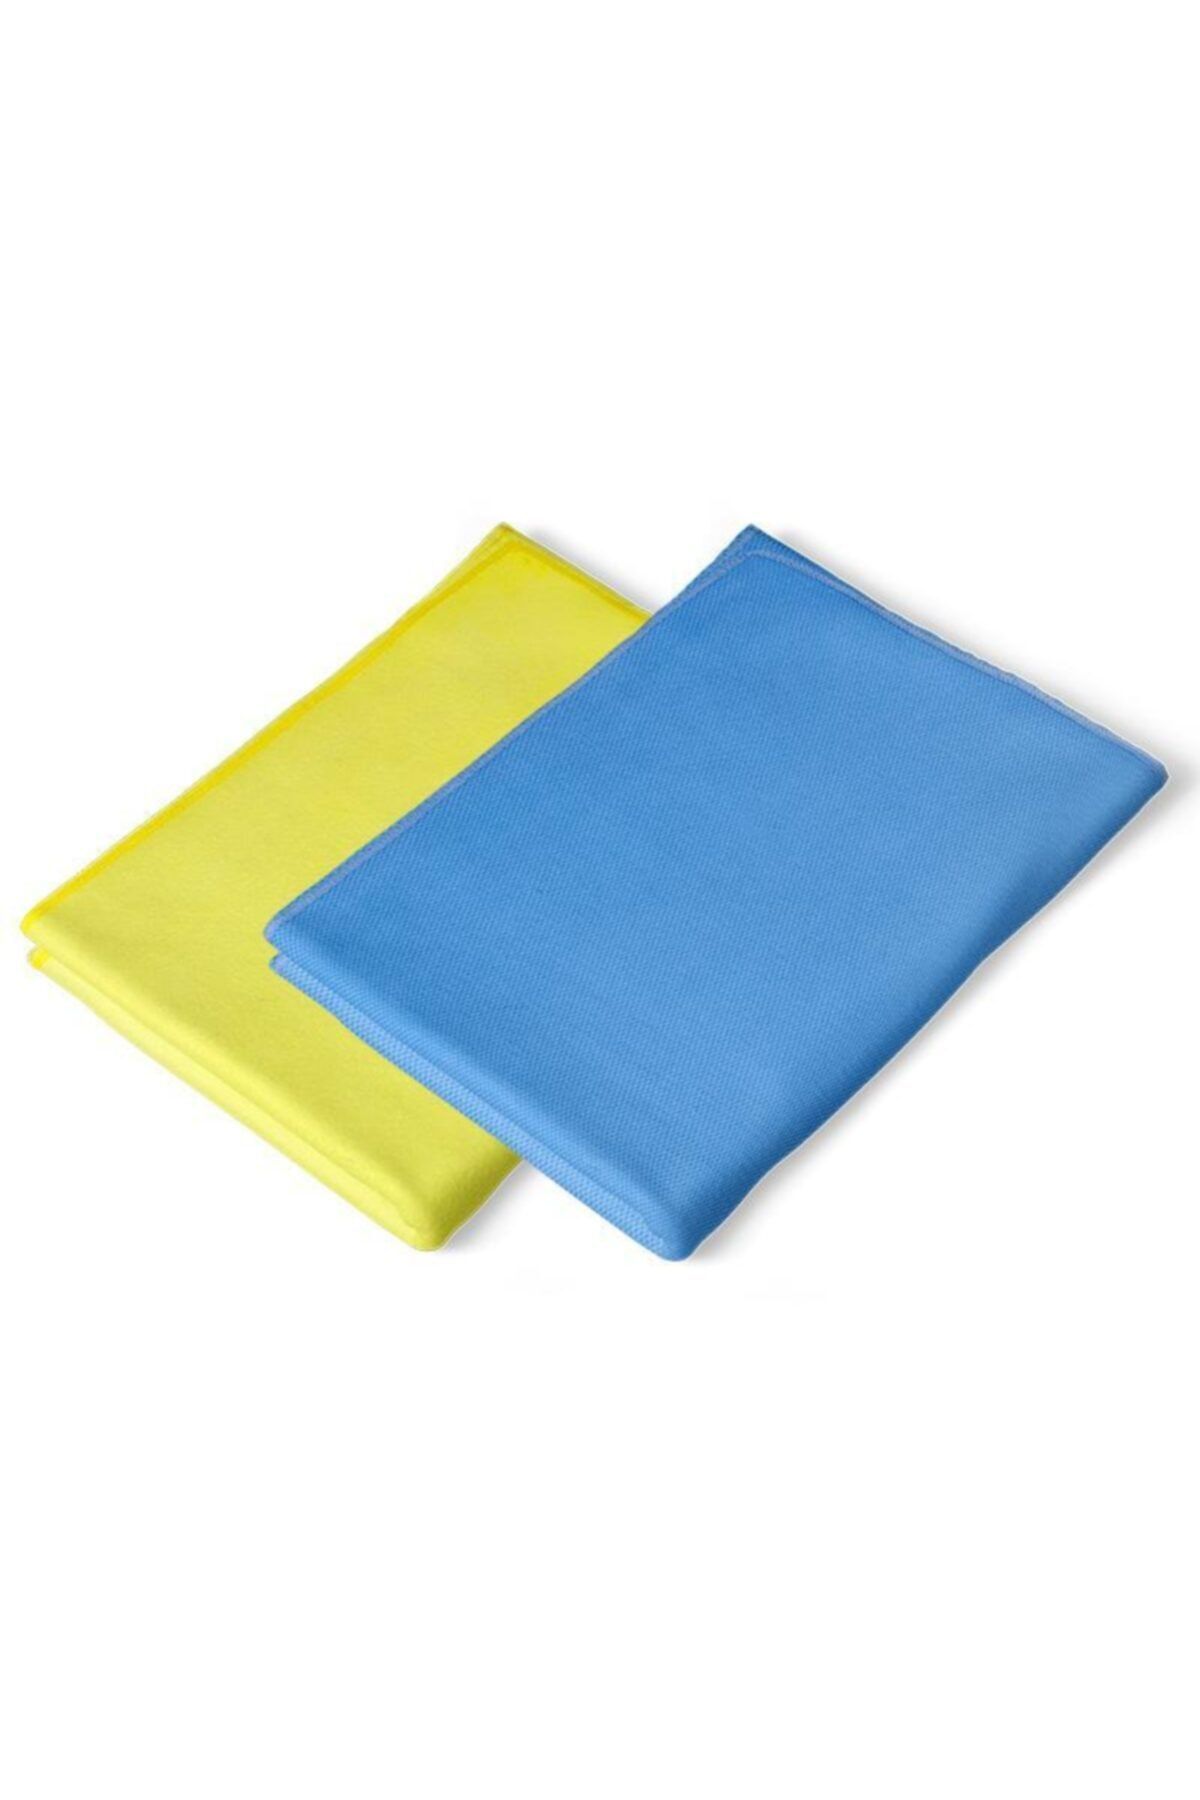 Silva Oto Bakım Seti Uyumlu  (oto Cam Bez Ve Genel Temizlik Bez) mavi sarı